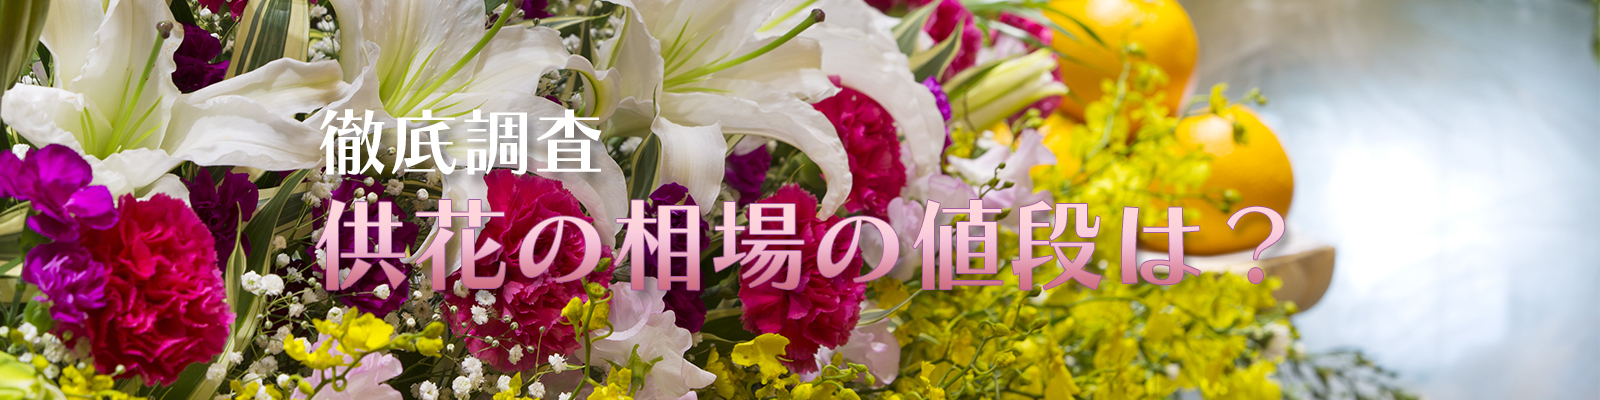 お葬式で供花を供える際の相場や注意点 配送の手順も解説 供花の相場の値段